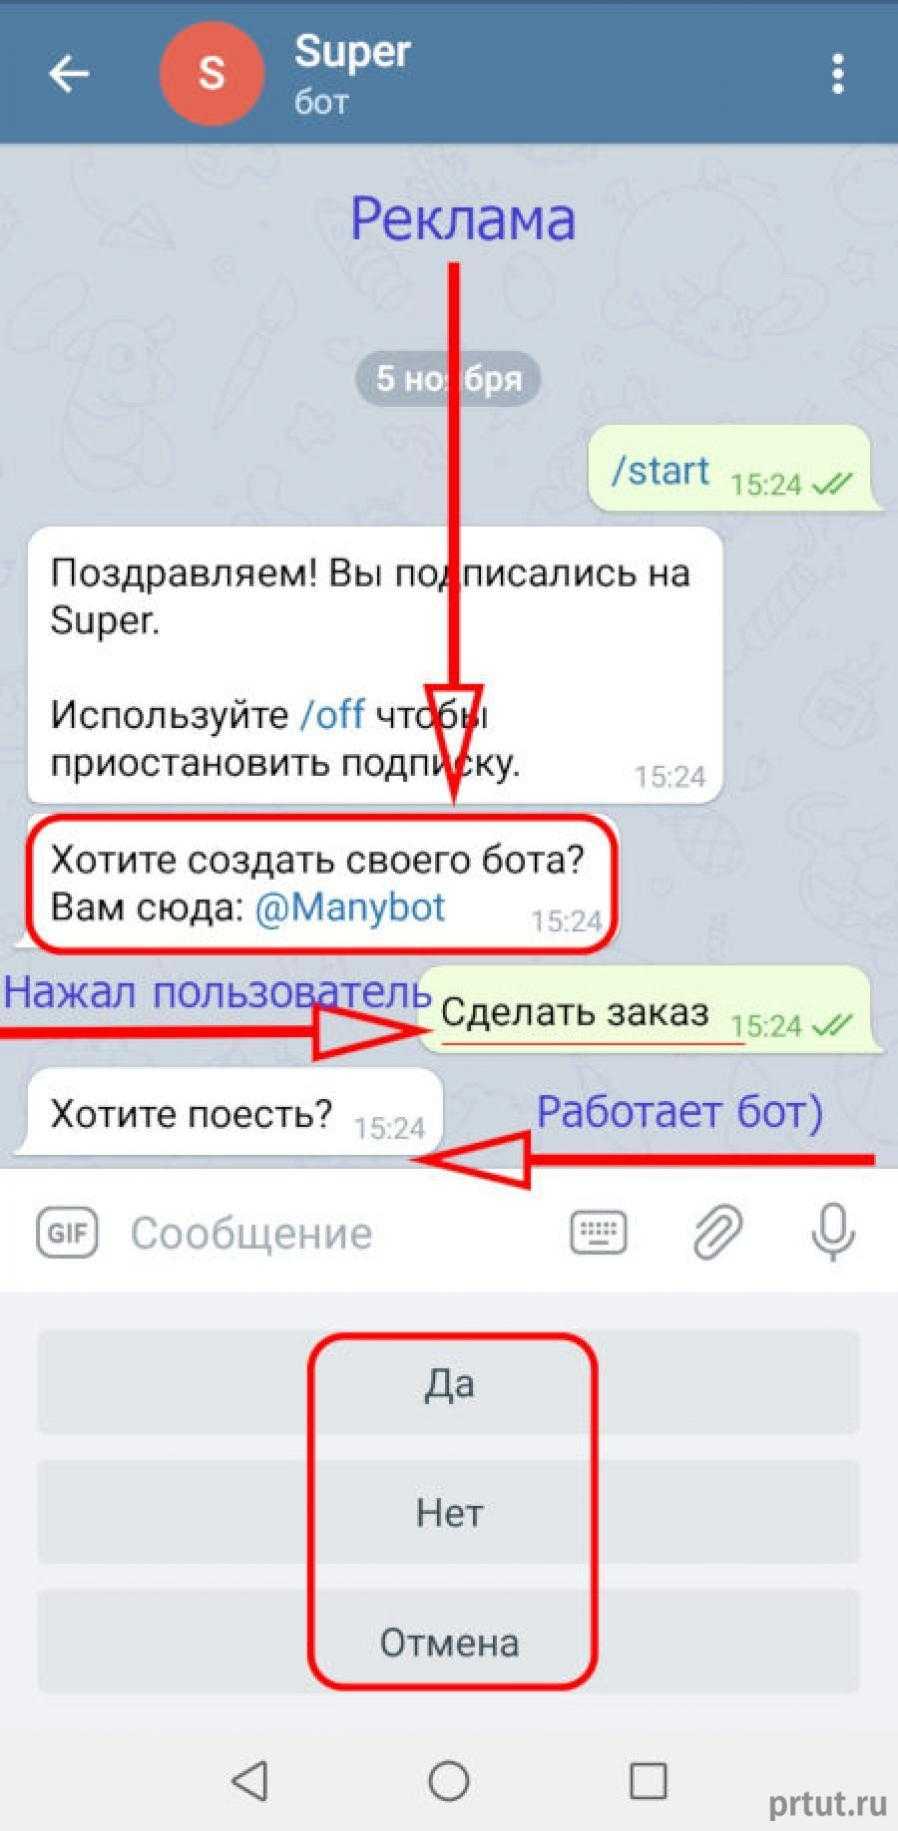 Как сделать телеграмм на русском в компьютере фото 83